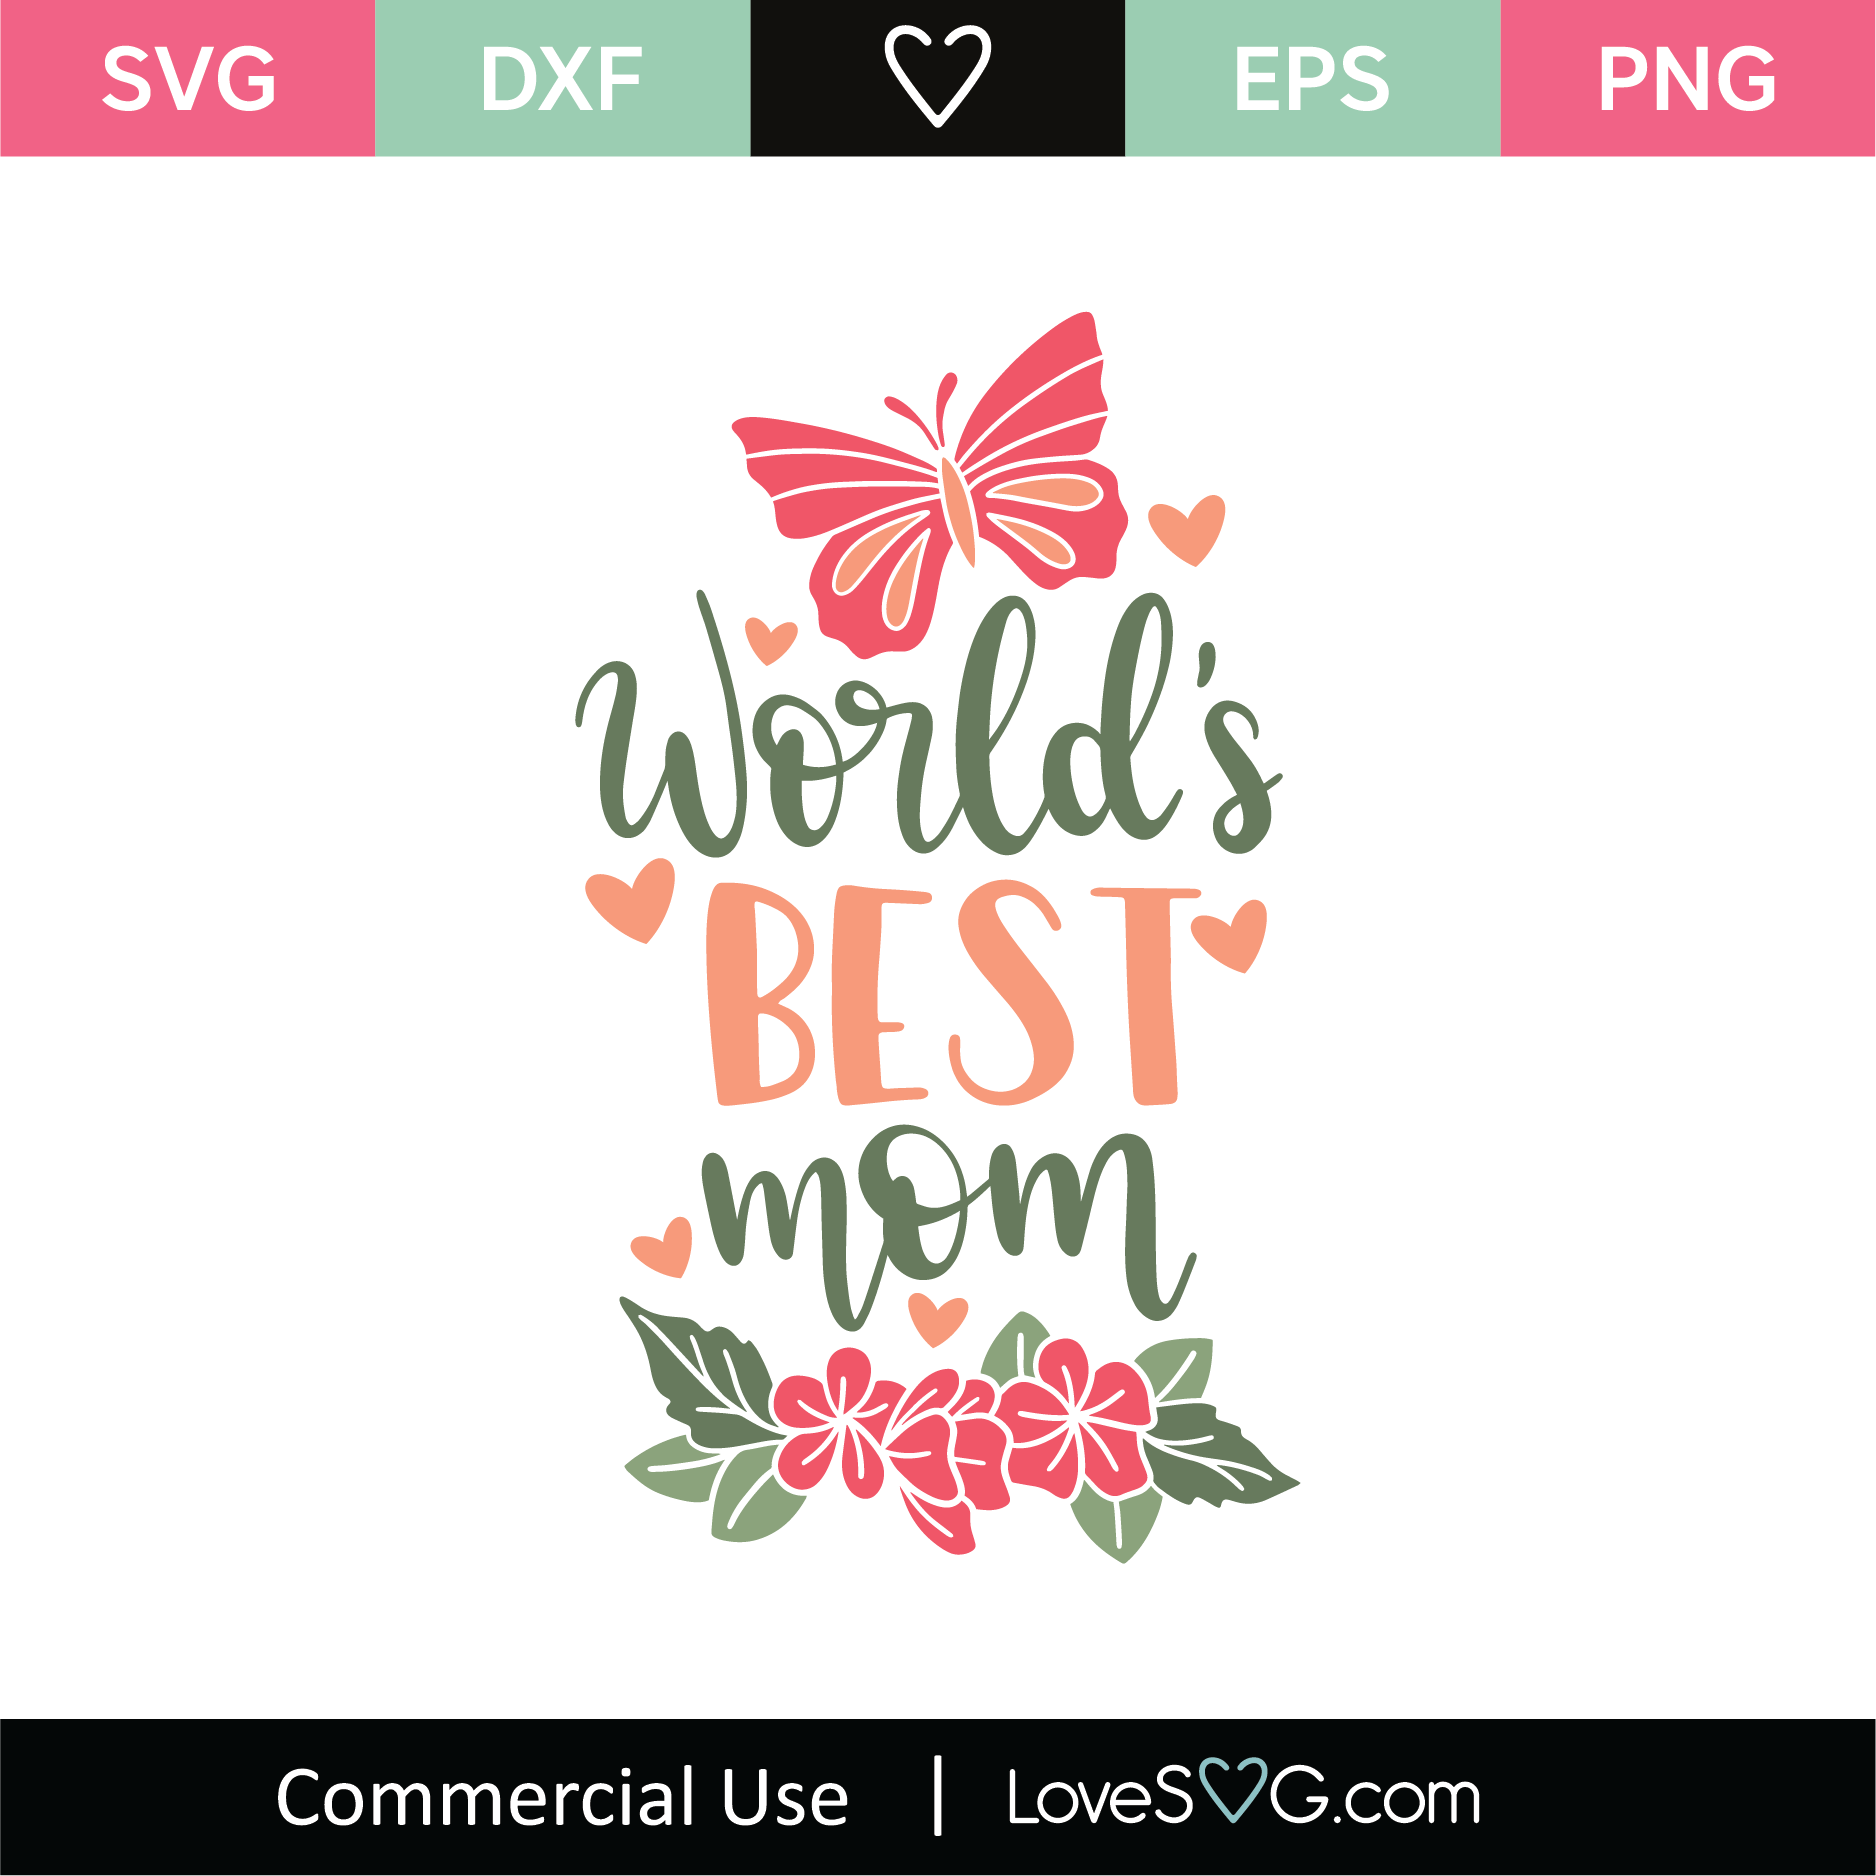 Download World's Best Mom SVG Cut File - Lovesvg.com